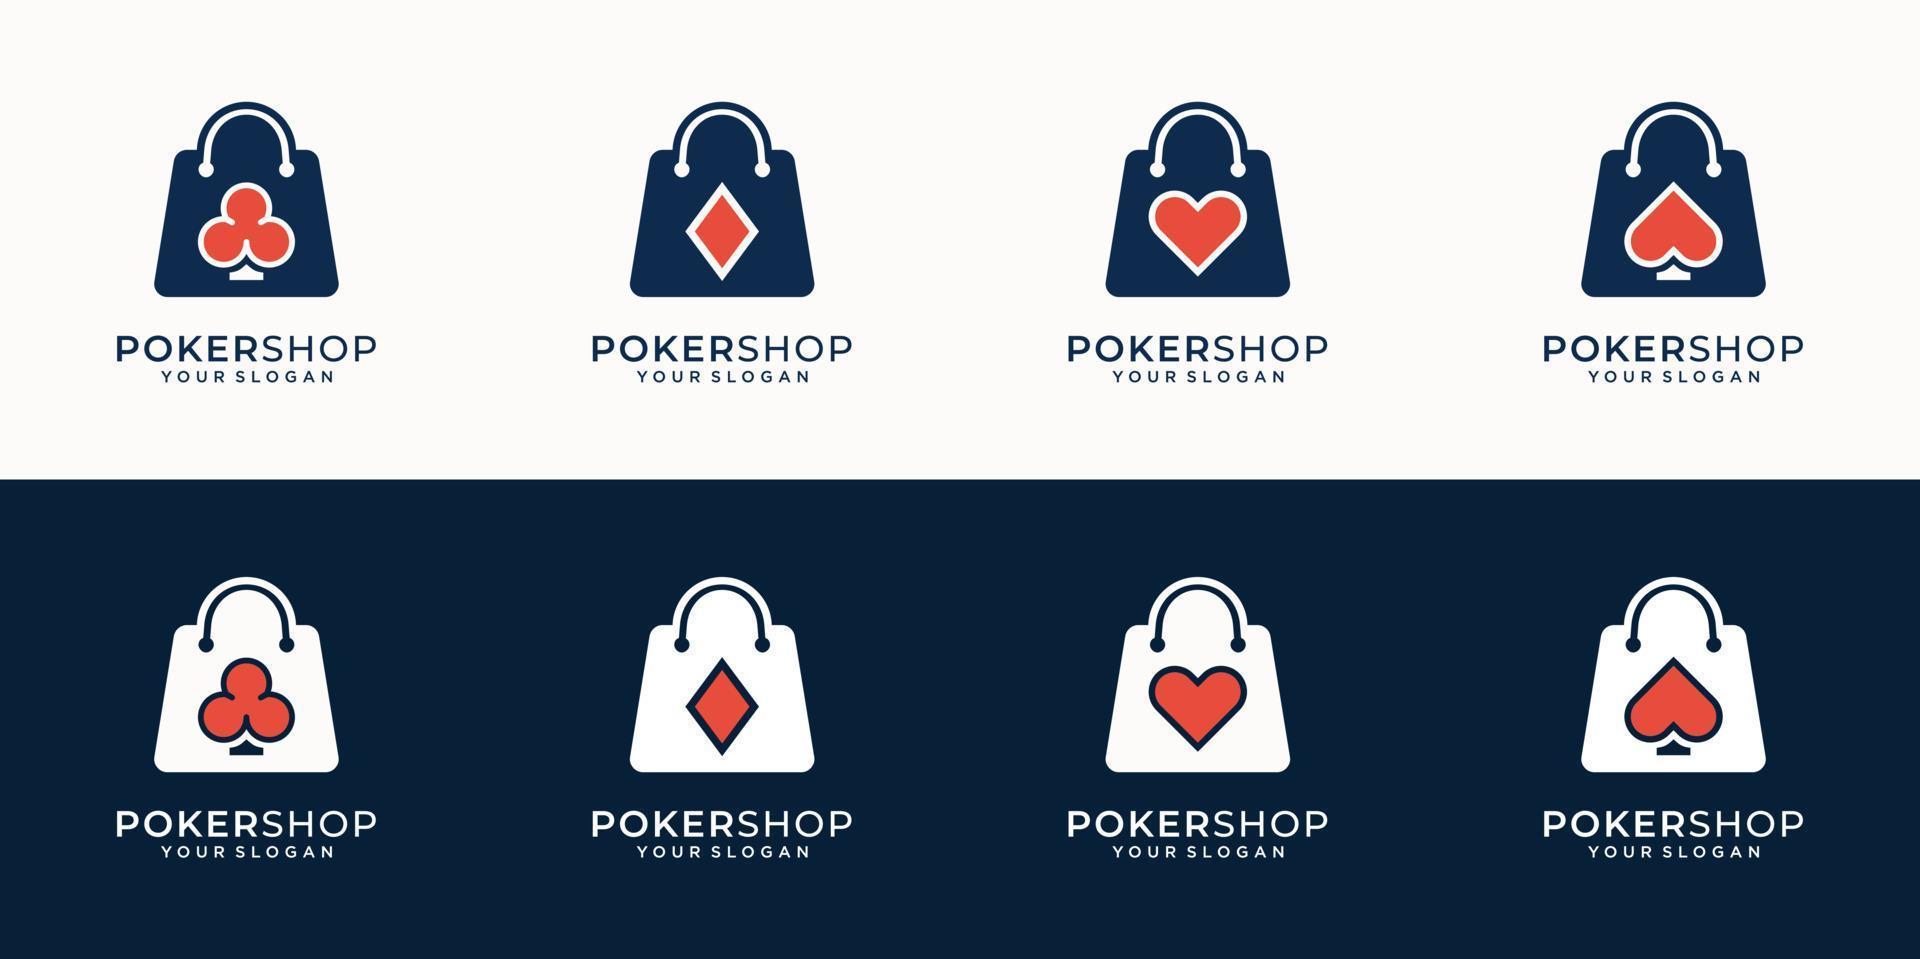 satz kreativer logo-poker- und shop-kombination im modernen stil design der silhouette. shop-logo, geschäft, poker, königlich, ass, kasino, vektorillustration. Premium-Vektor vektor